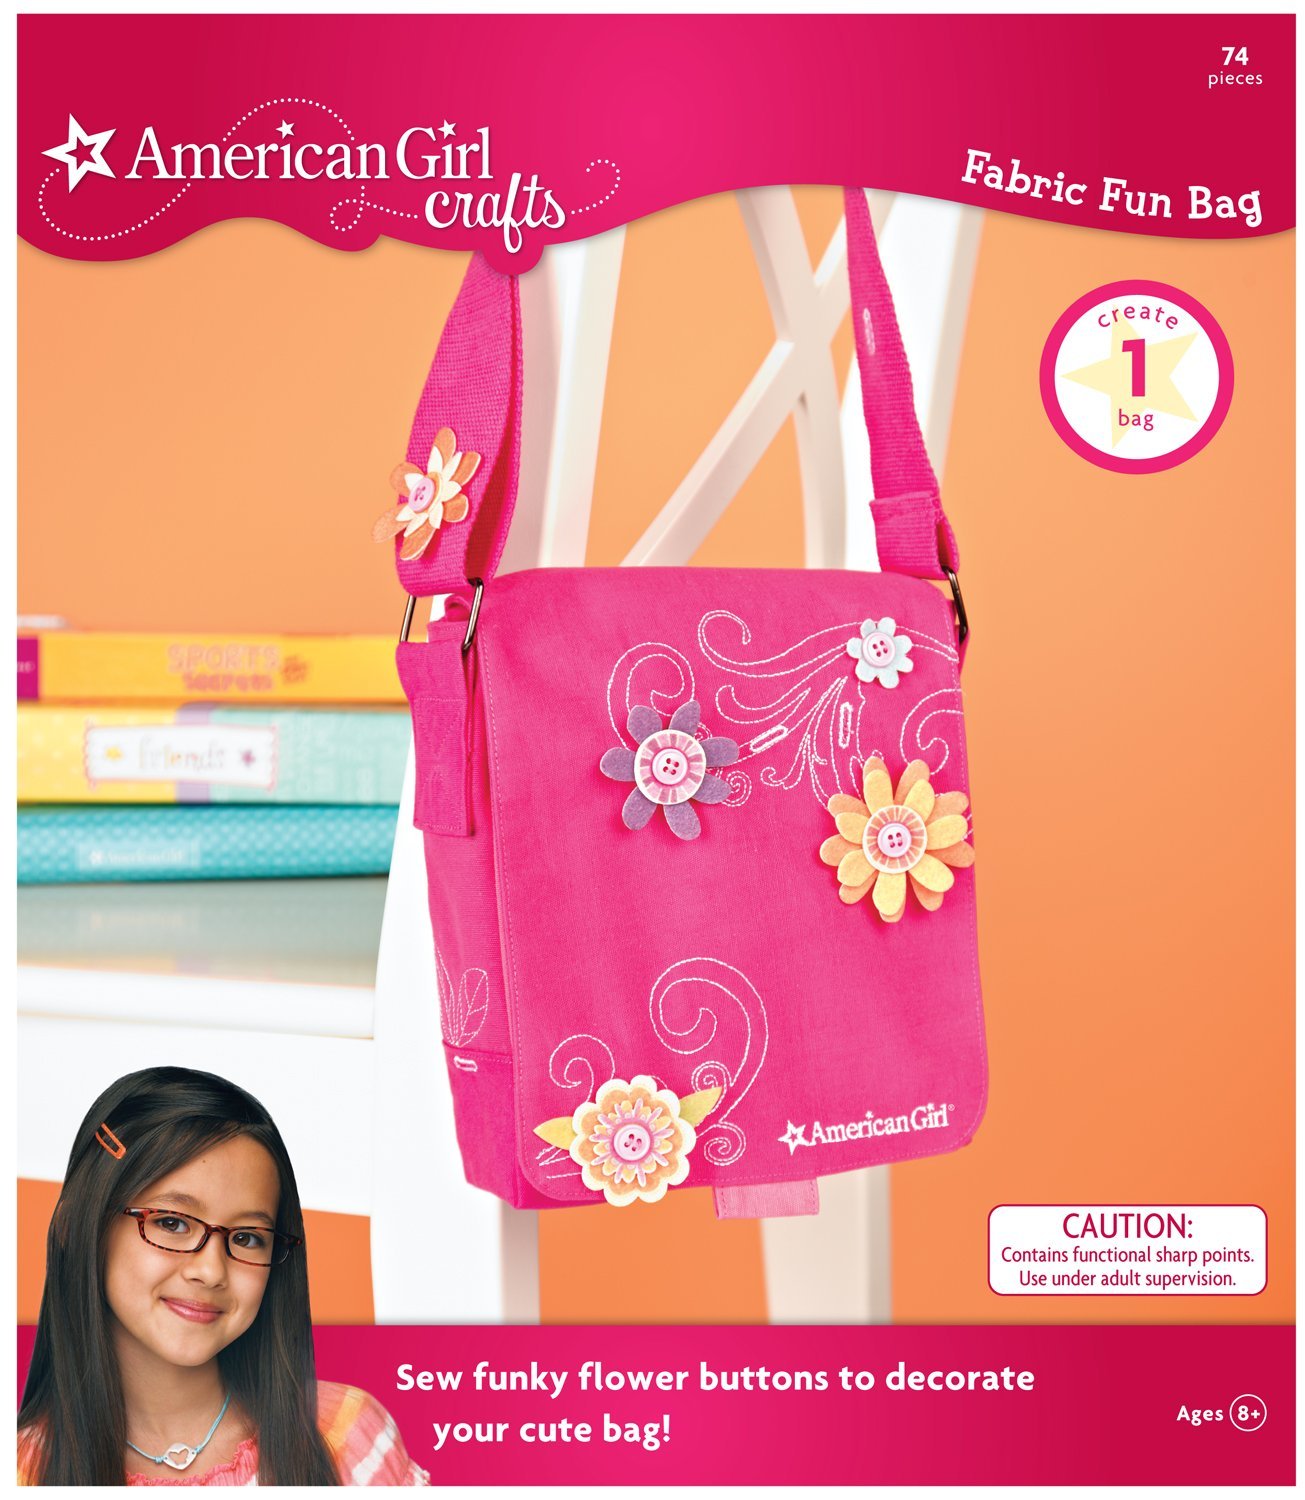 American Girl Crafts – Fun Fabric Bag – Just $15.22!